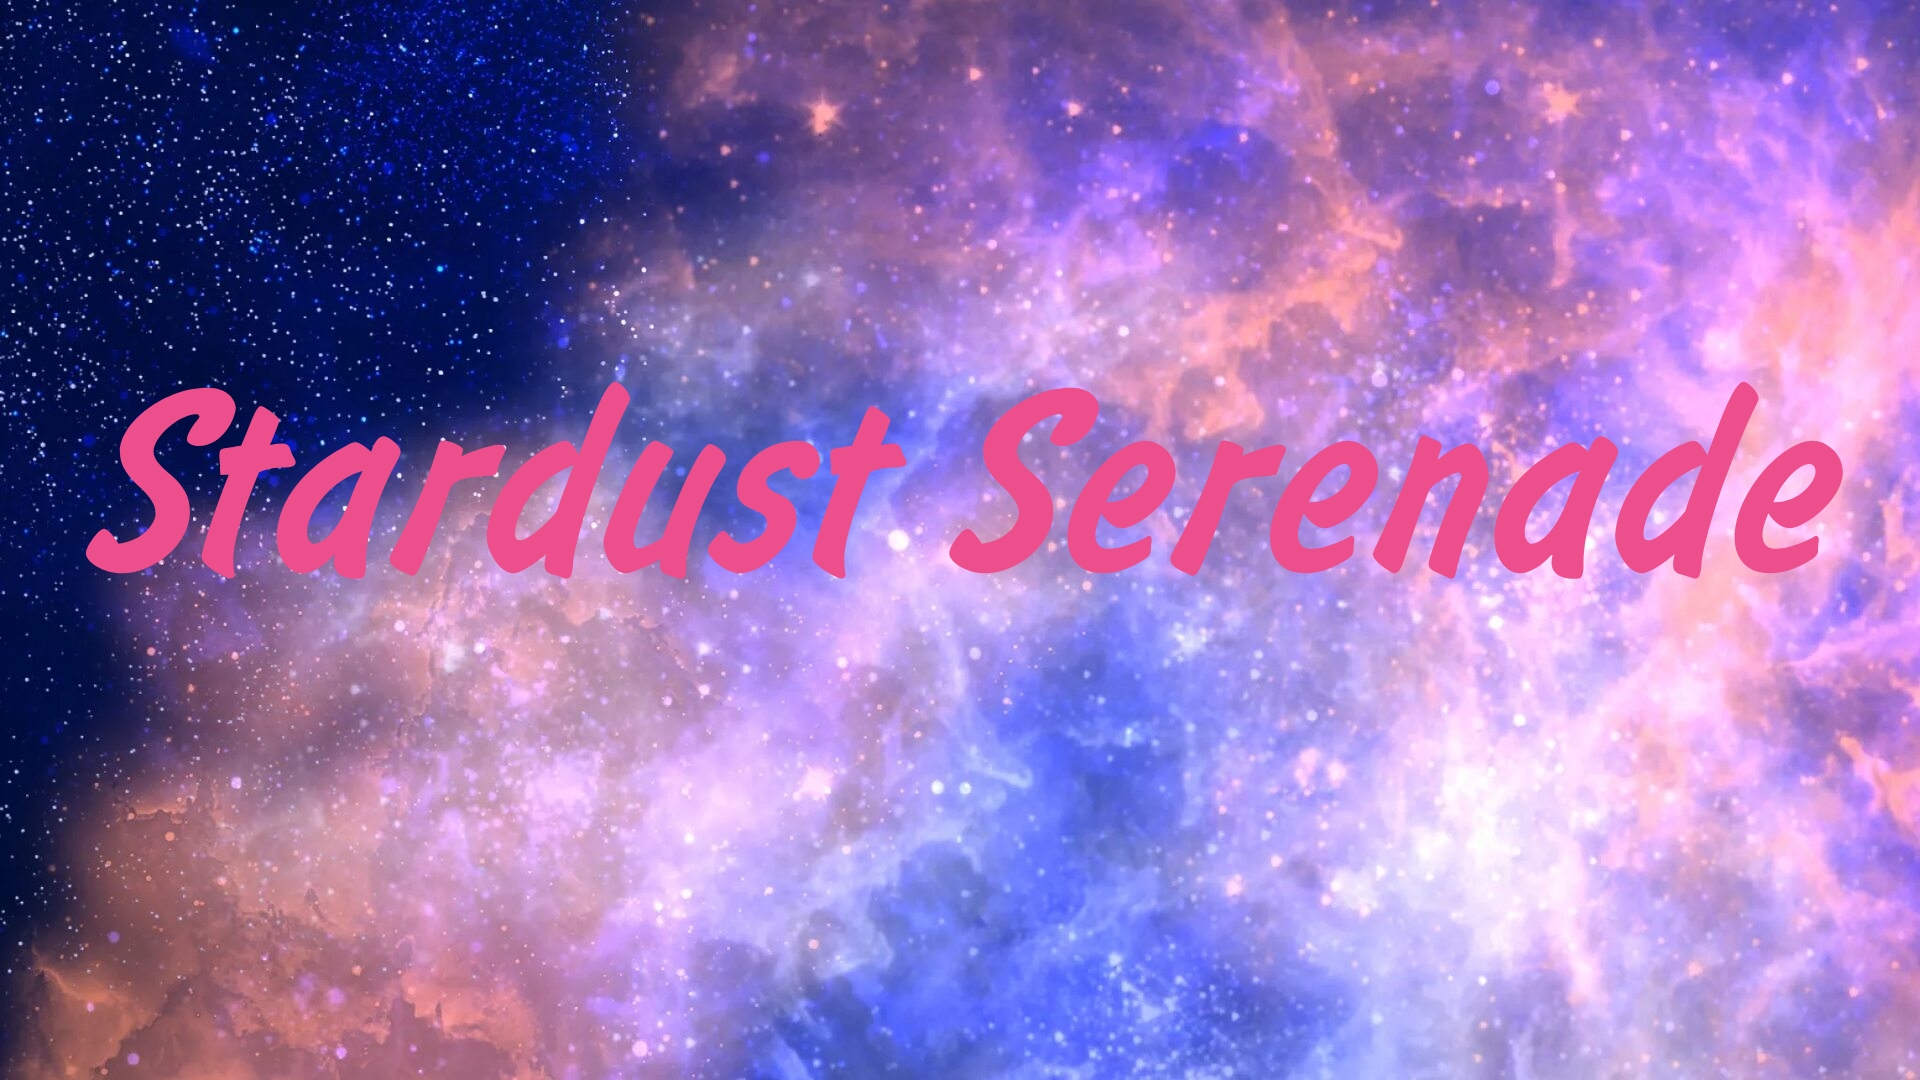 (달의 별)  lunar stars (스타더스트 세레나데 ) 
"Stardust Serenade"